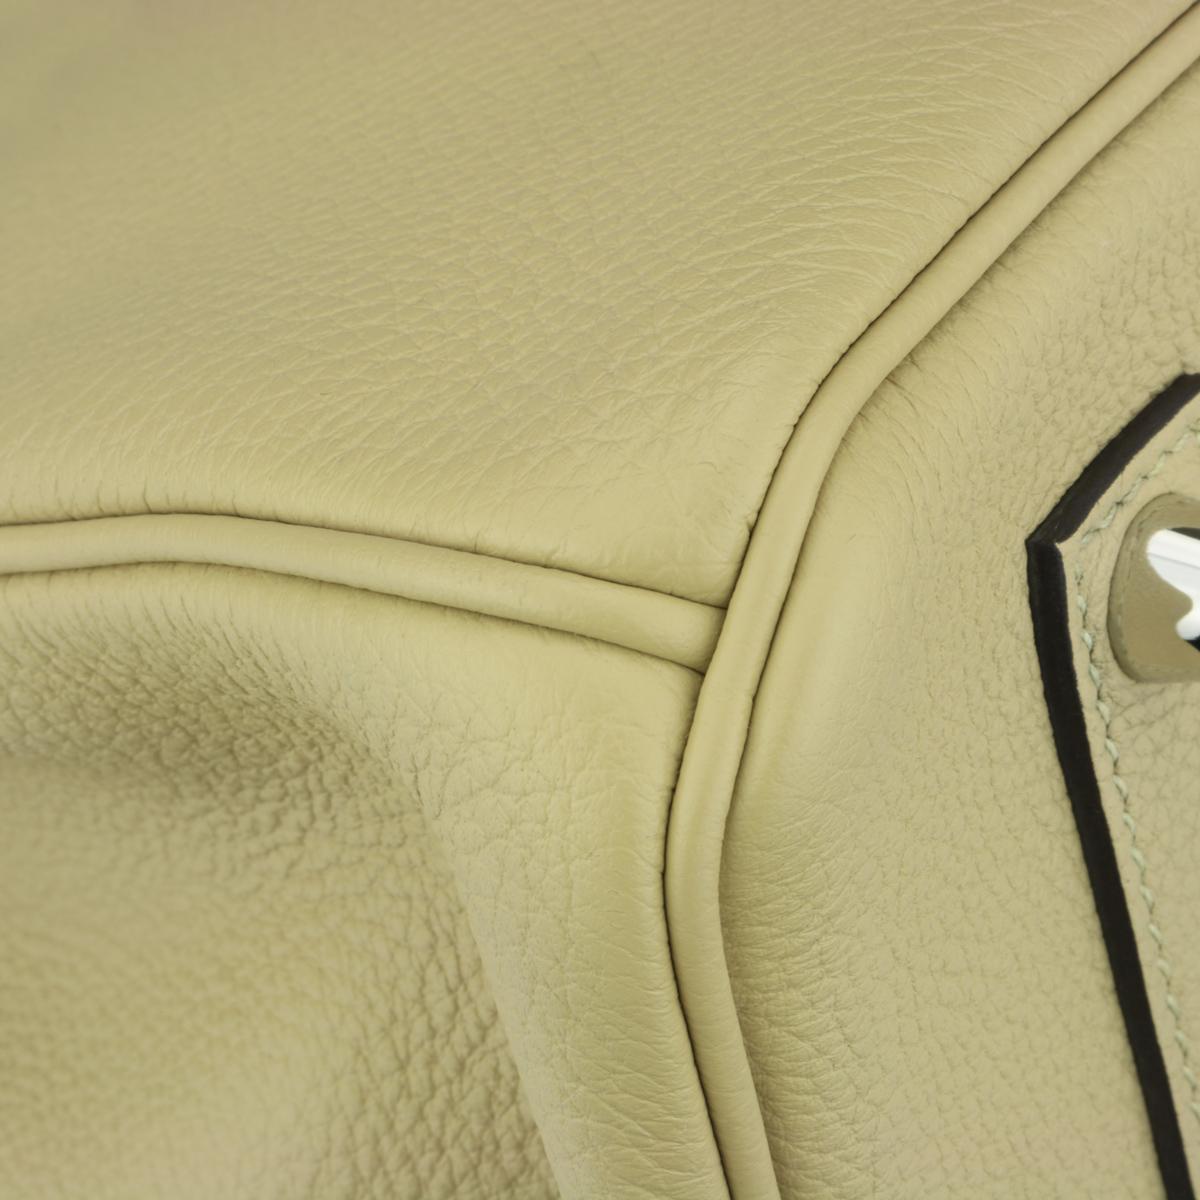 Hermès Birkin Bag 35cm Tasche Trench Togo Leder mit Palladium Hardware Stempel X 2